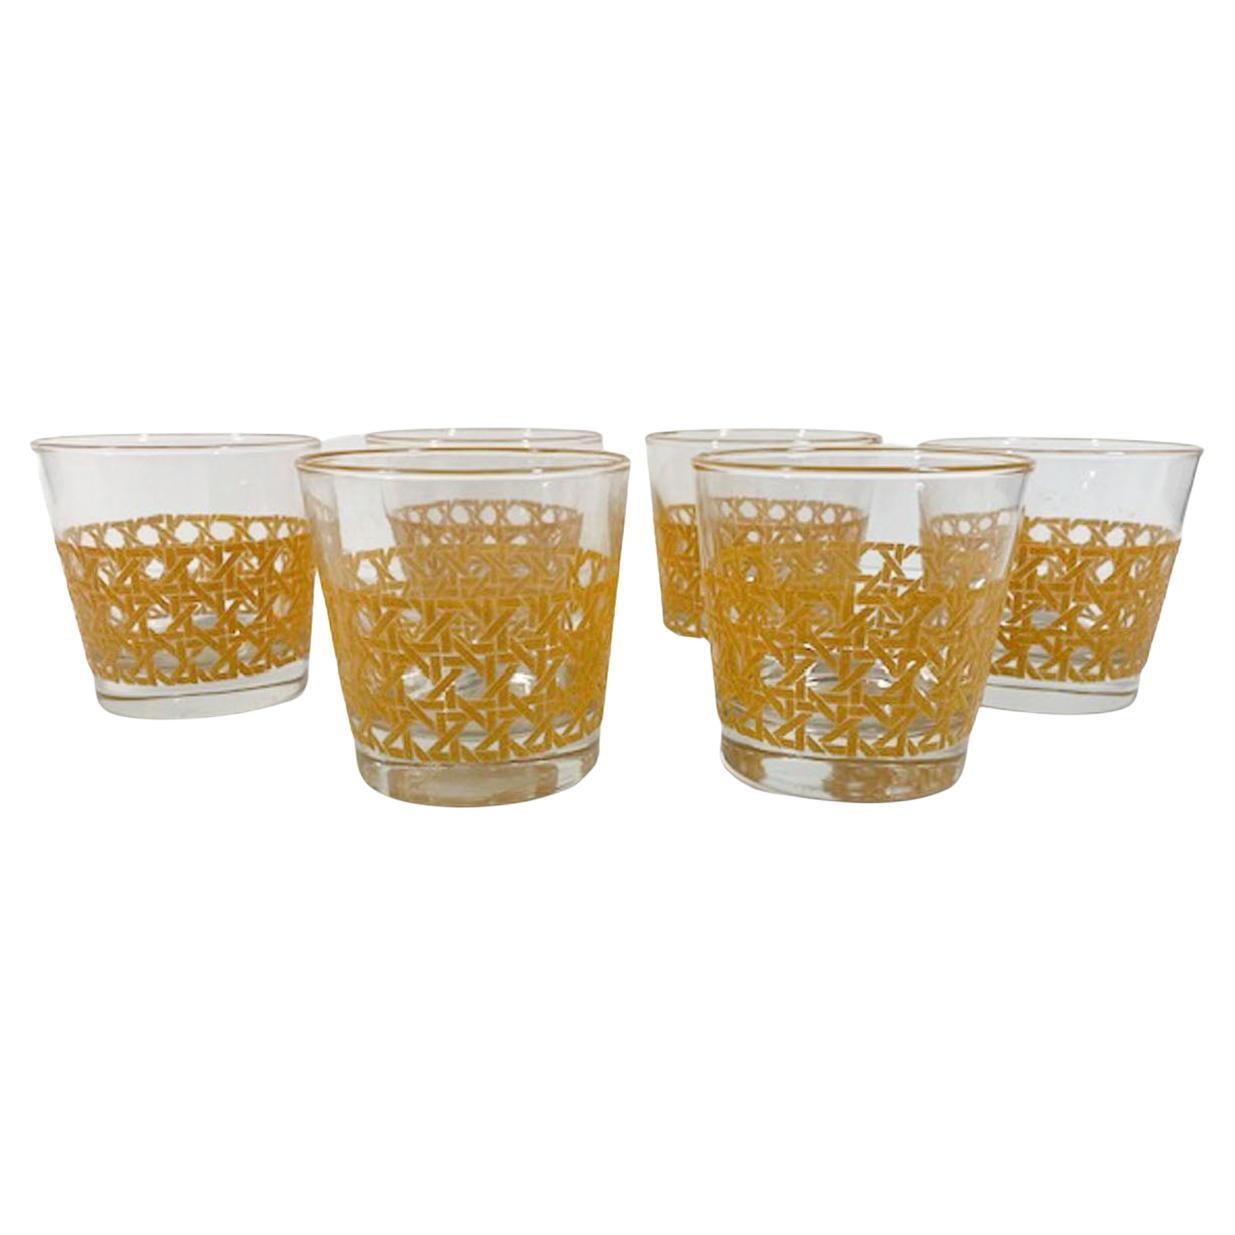 Six verres vintage Libbey Glass Co. à motif de canne, verres Old Fashioned ou Rocks